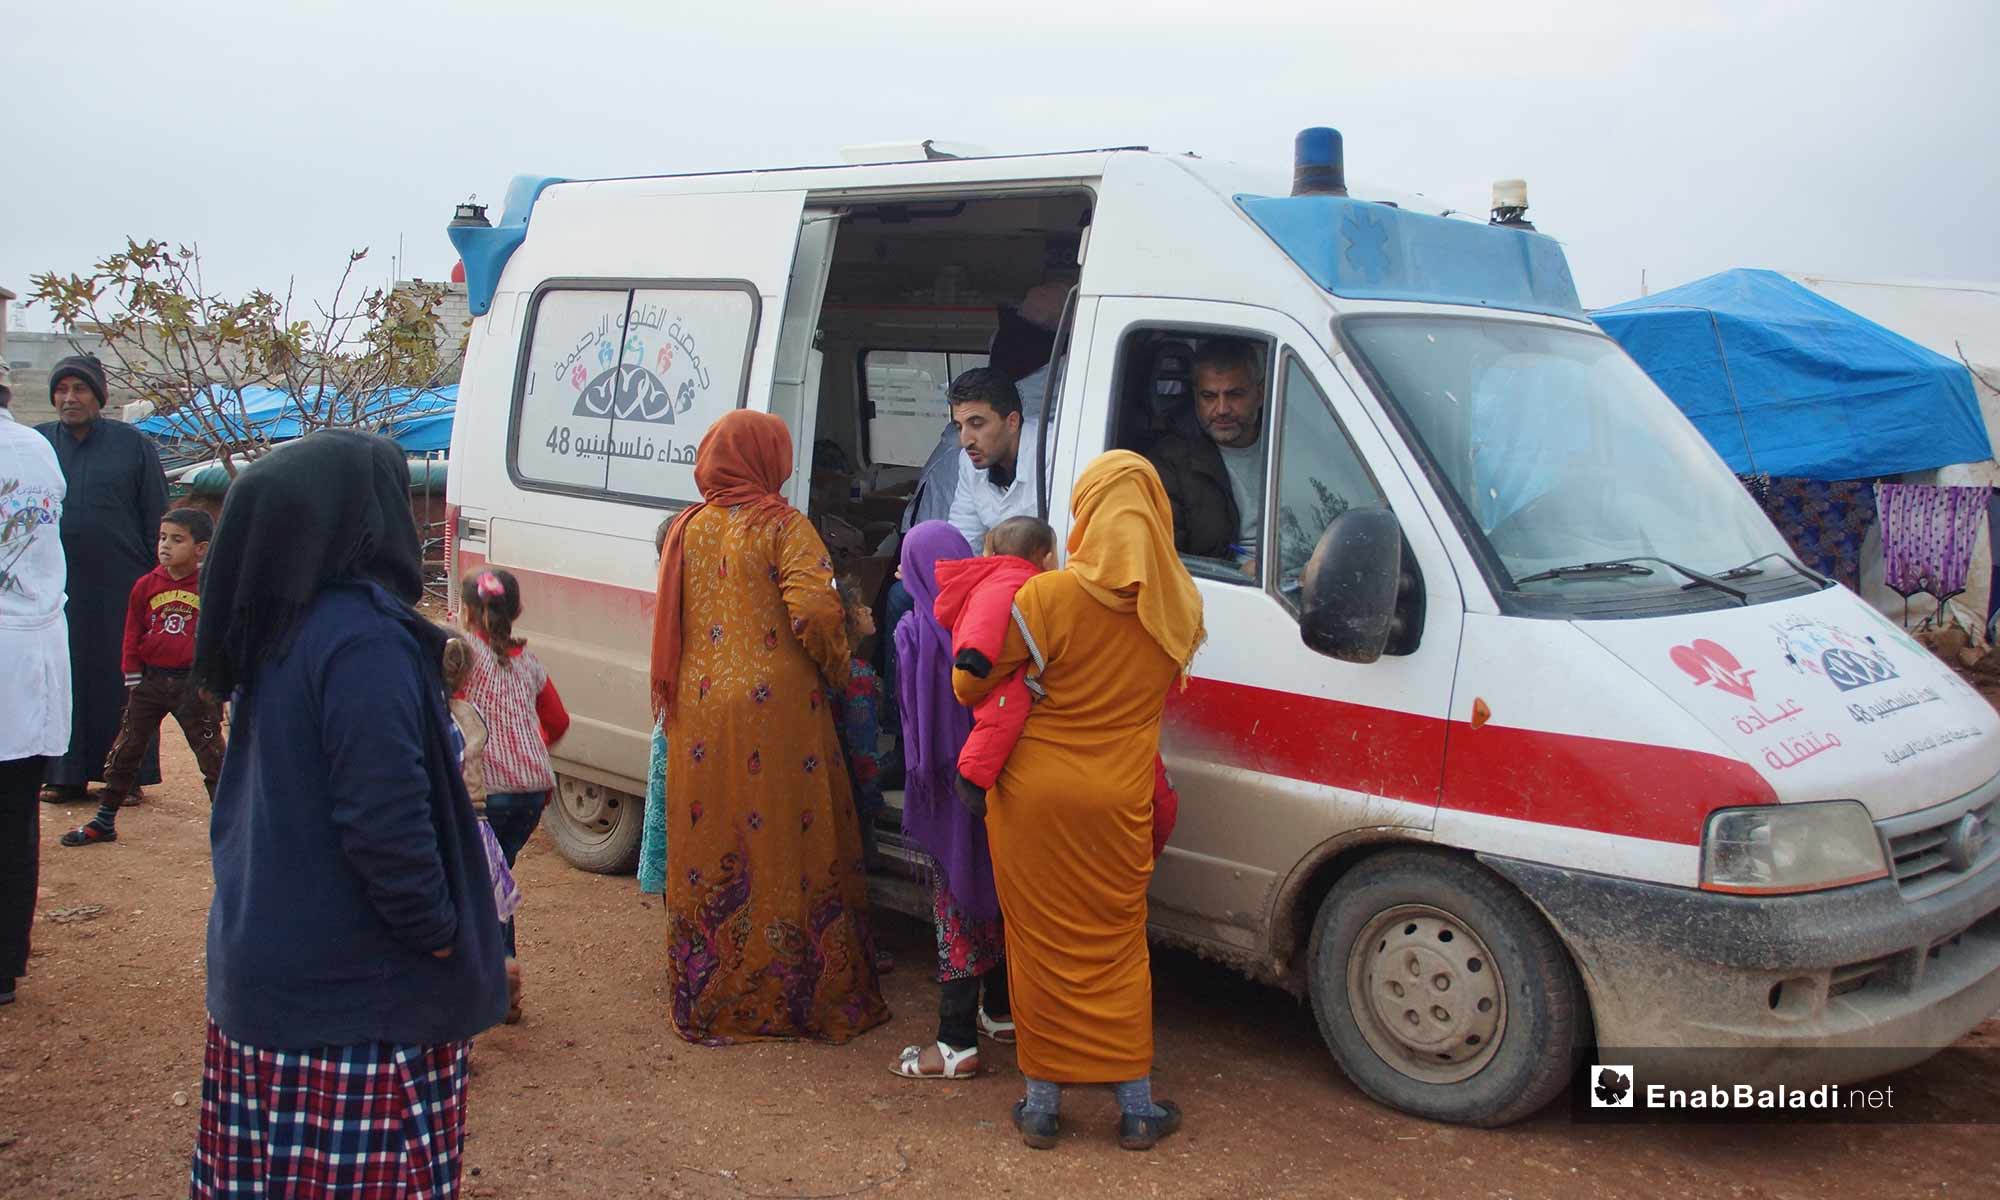 عيادات متنقلة في مخيمات نازحي ريف حماه - 4 من كانون الأول 2018 (عنب بلدي)